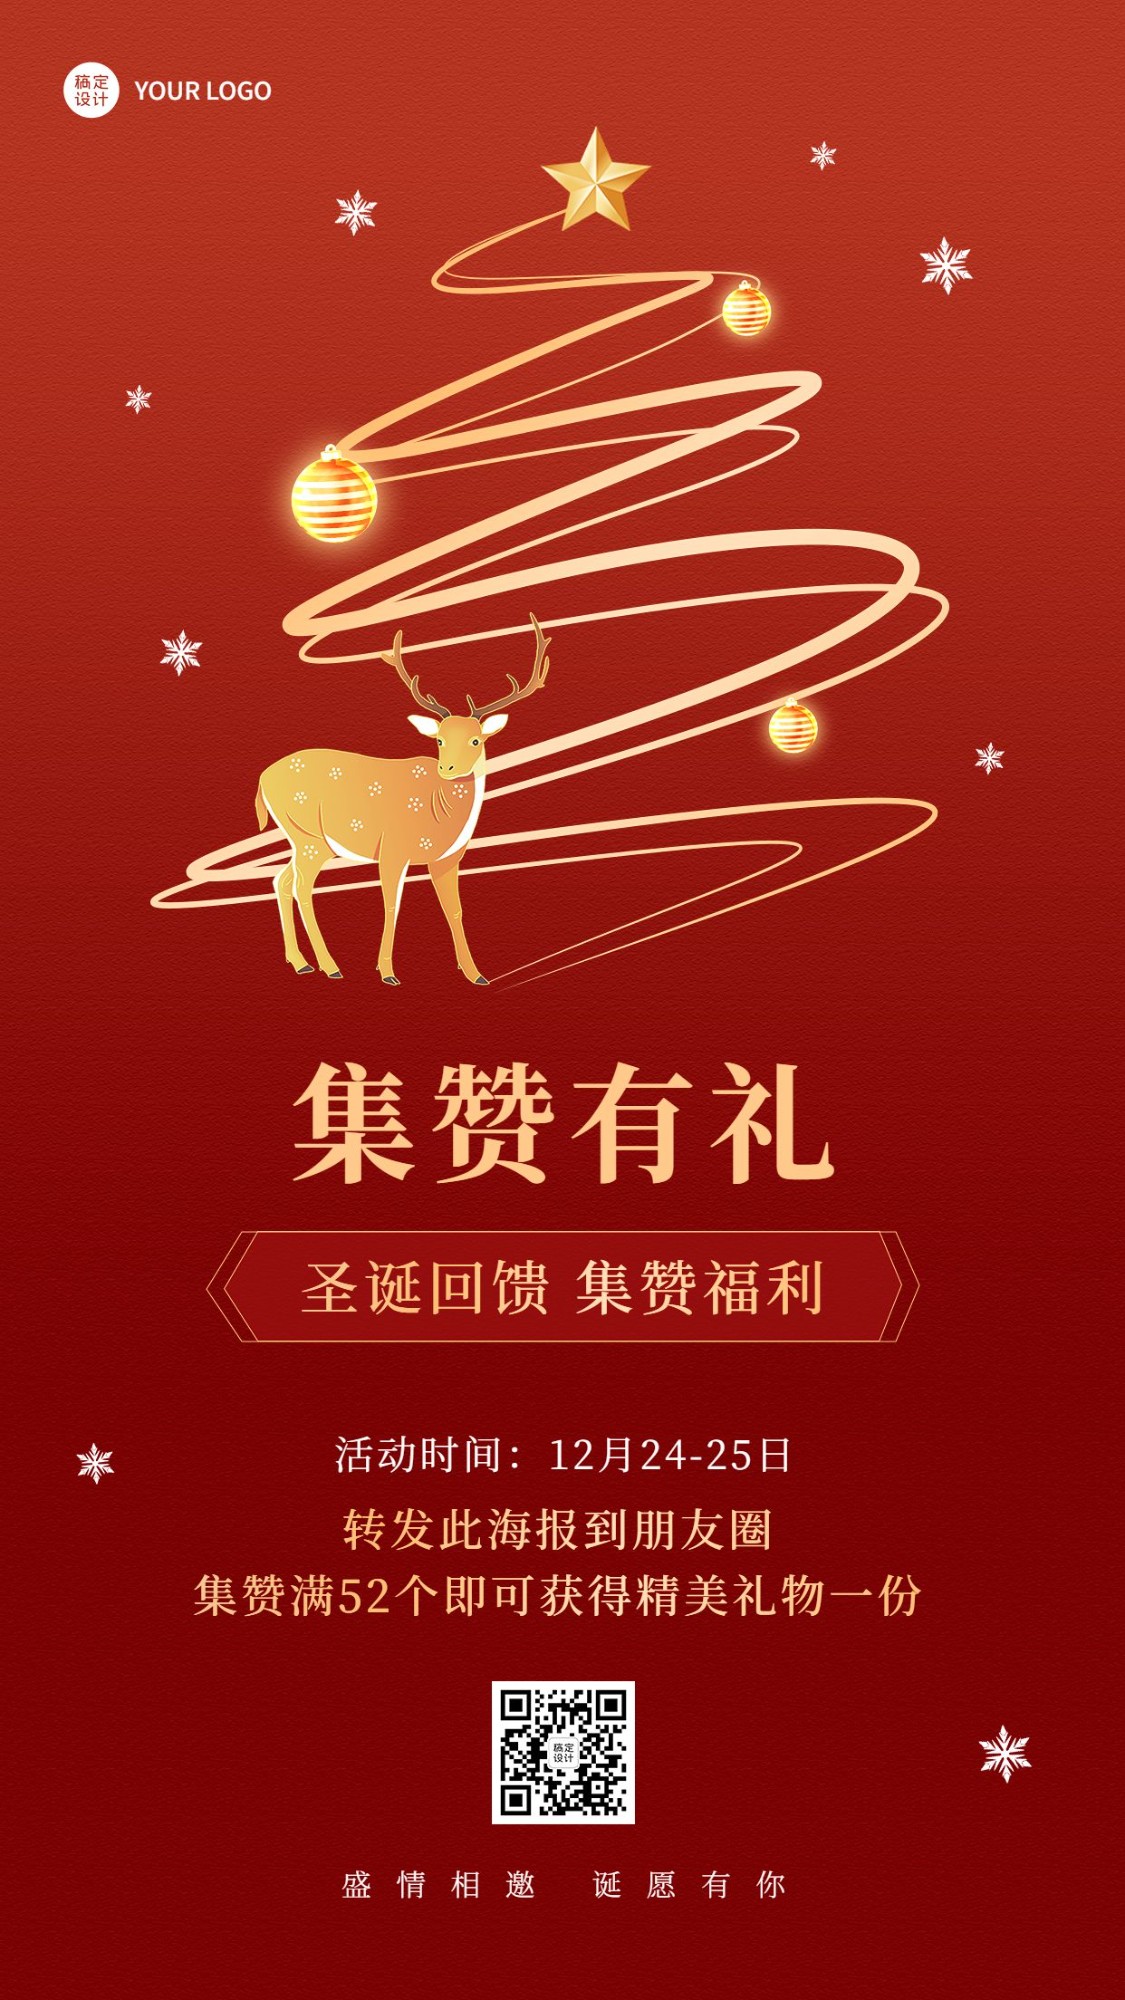 圣诞节节日促销手机海报预览效果